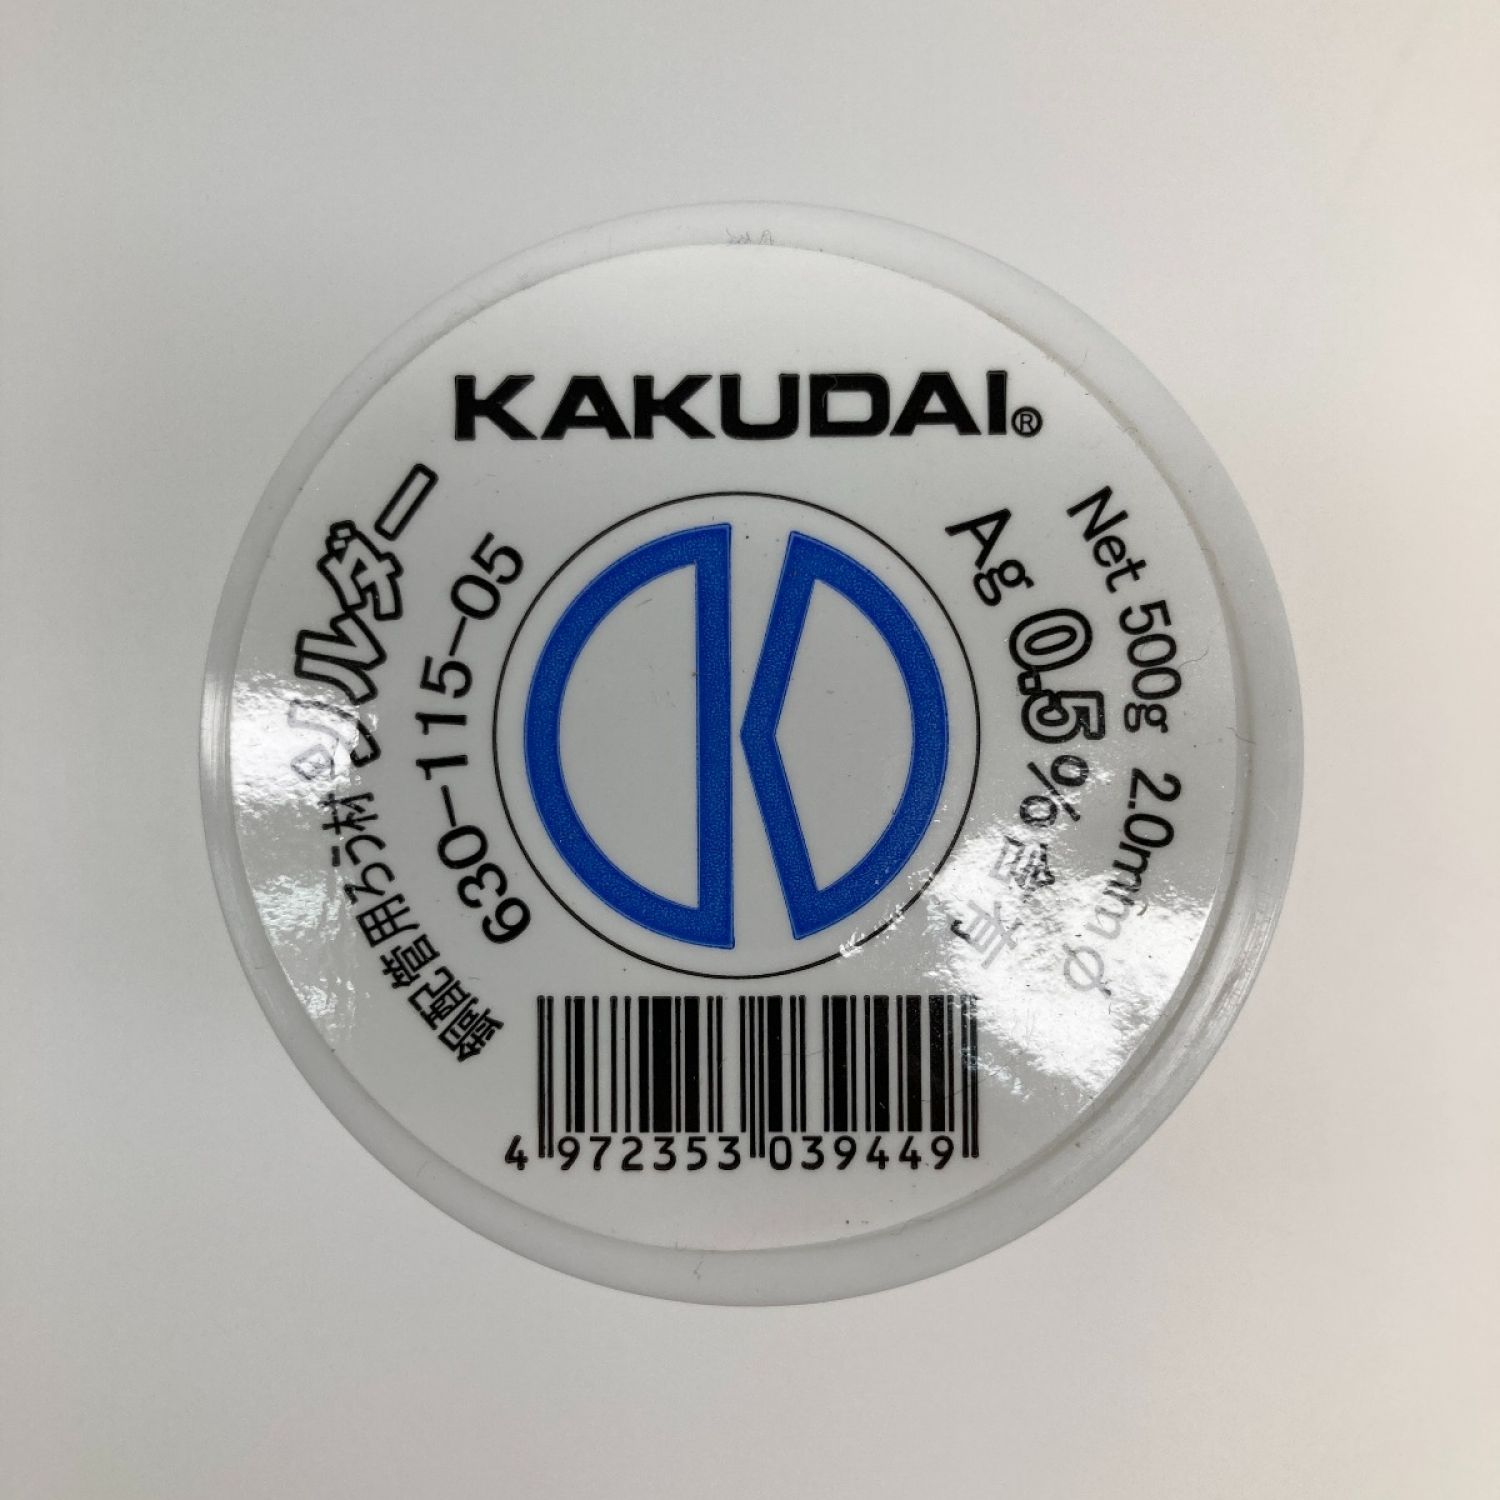 カクダイ KAKUDAI ソルダー(銀入)//0.5% 【630-115-05】 配管資材